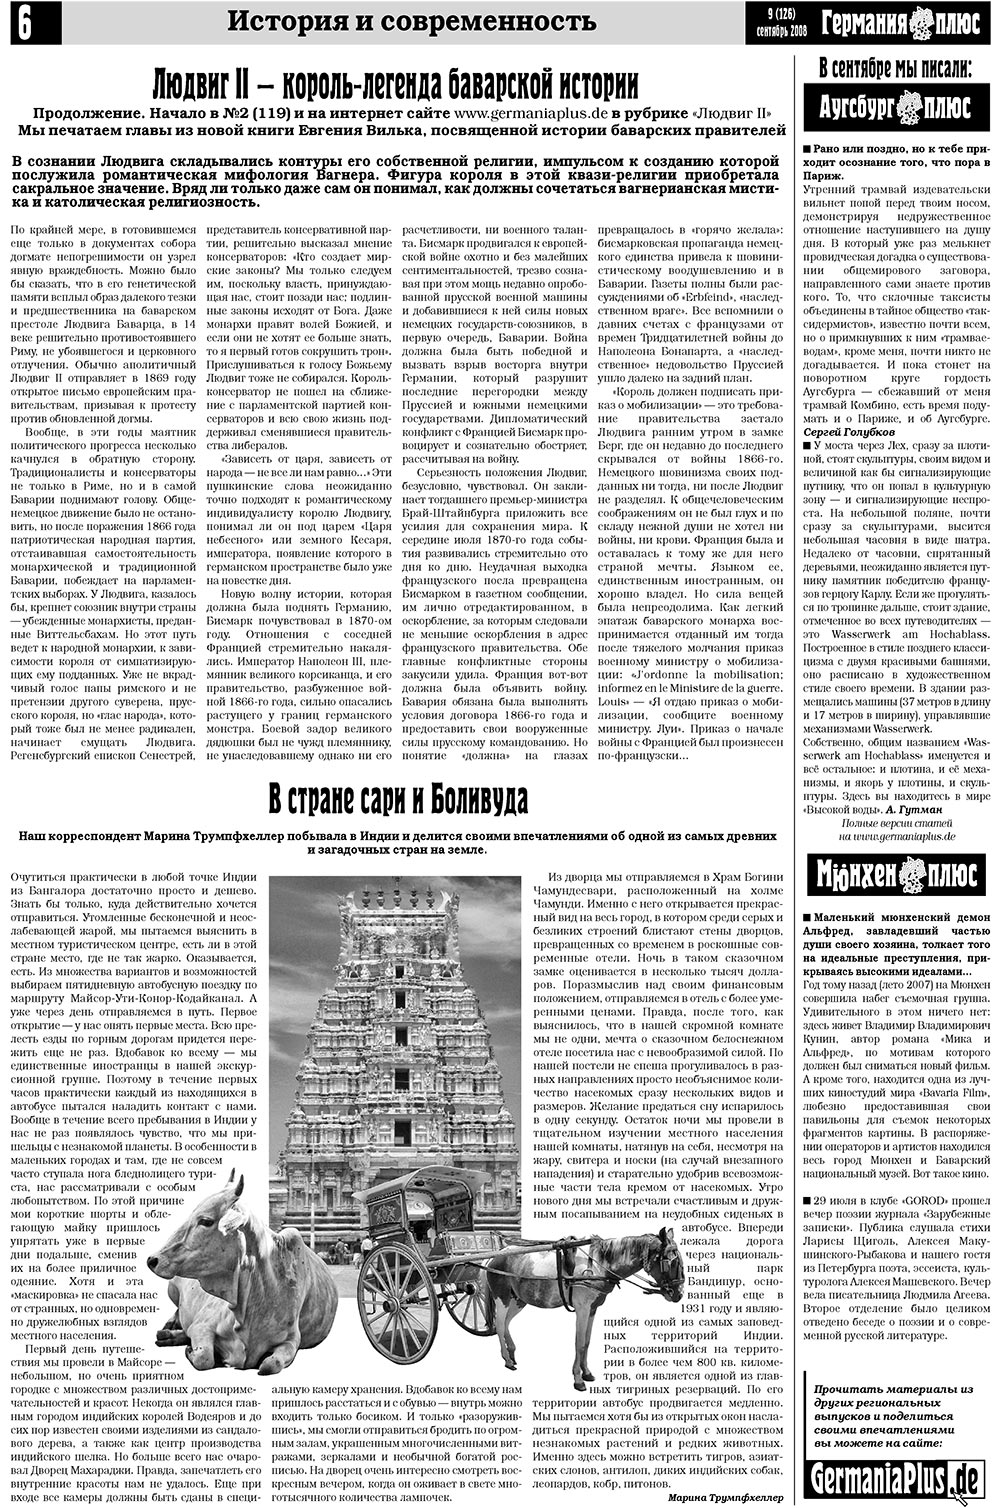 Германия плюс (газета). 2008 год, номер 9, стр. 6